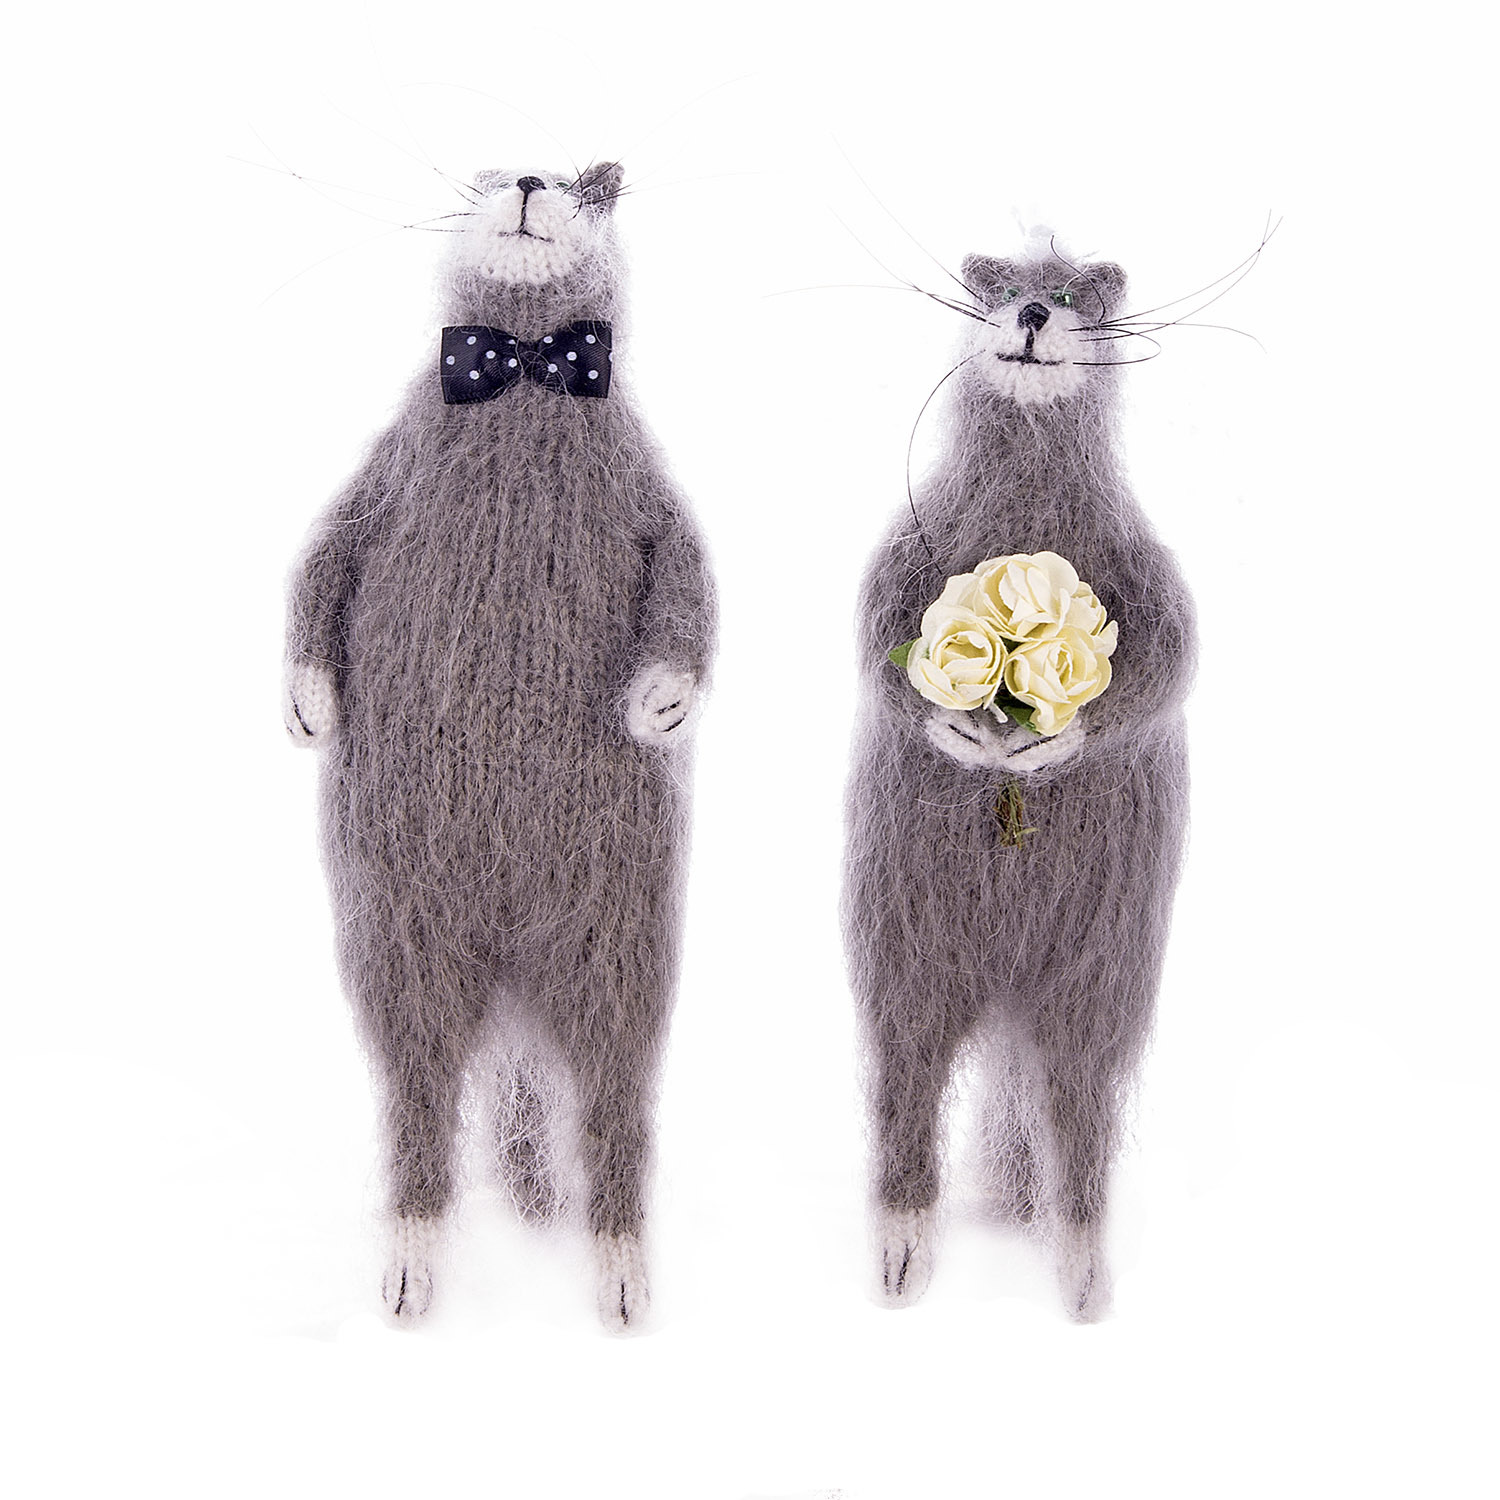 Свадебные коты - символ домашнего очага